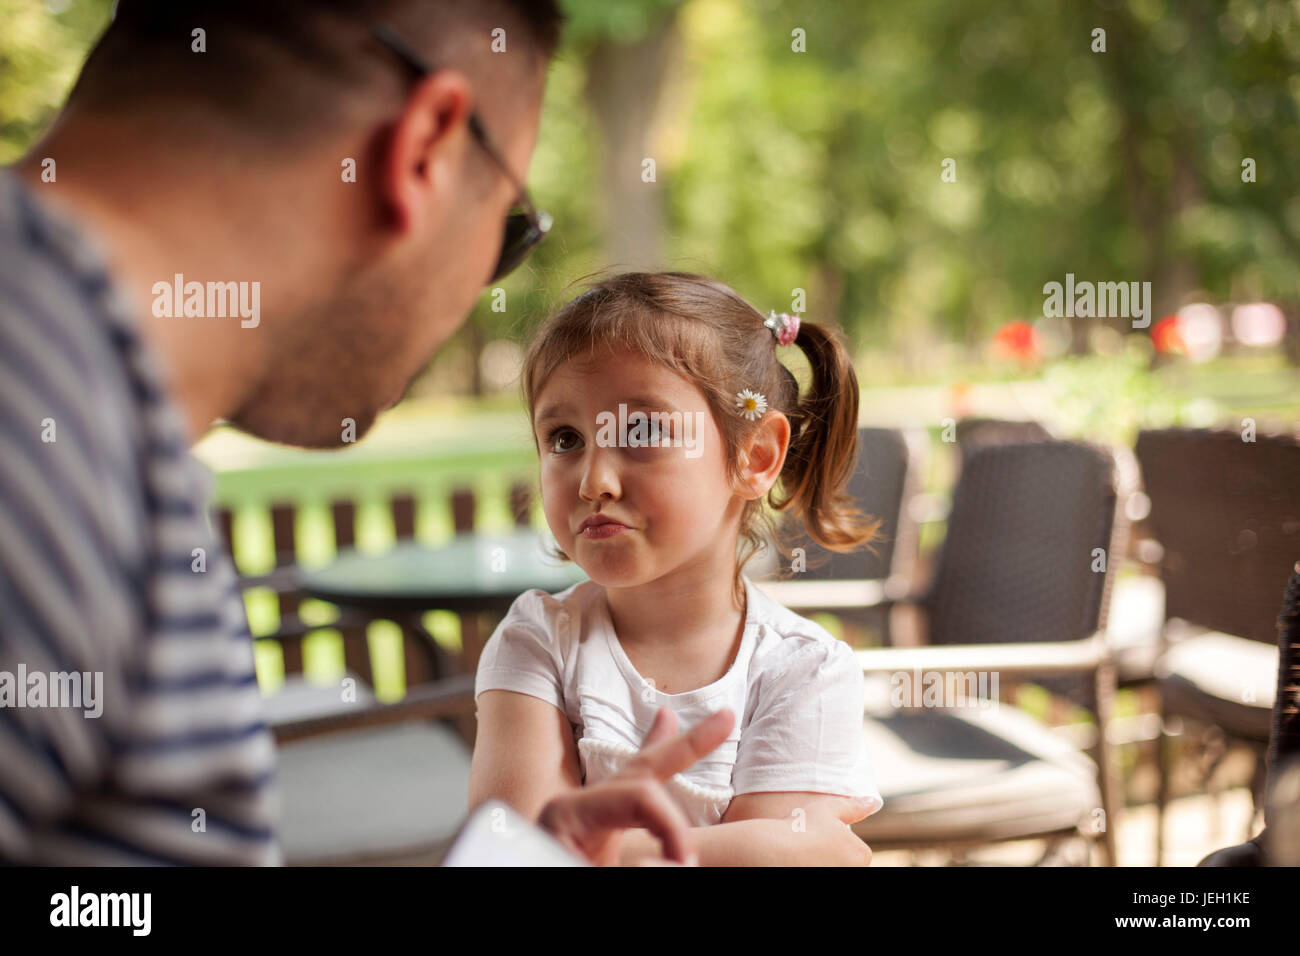 Vater junge Tochter anzuschreien Stockfoto